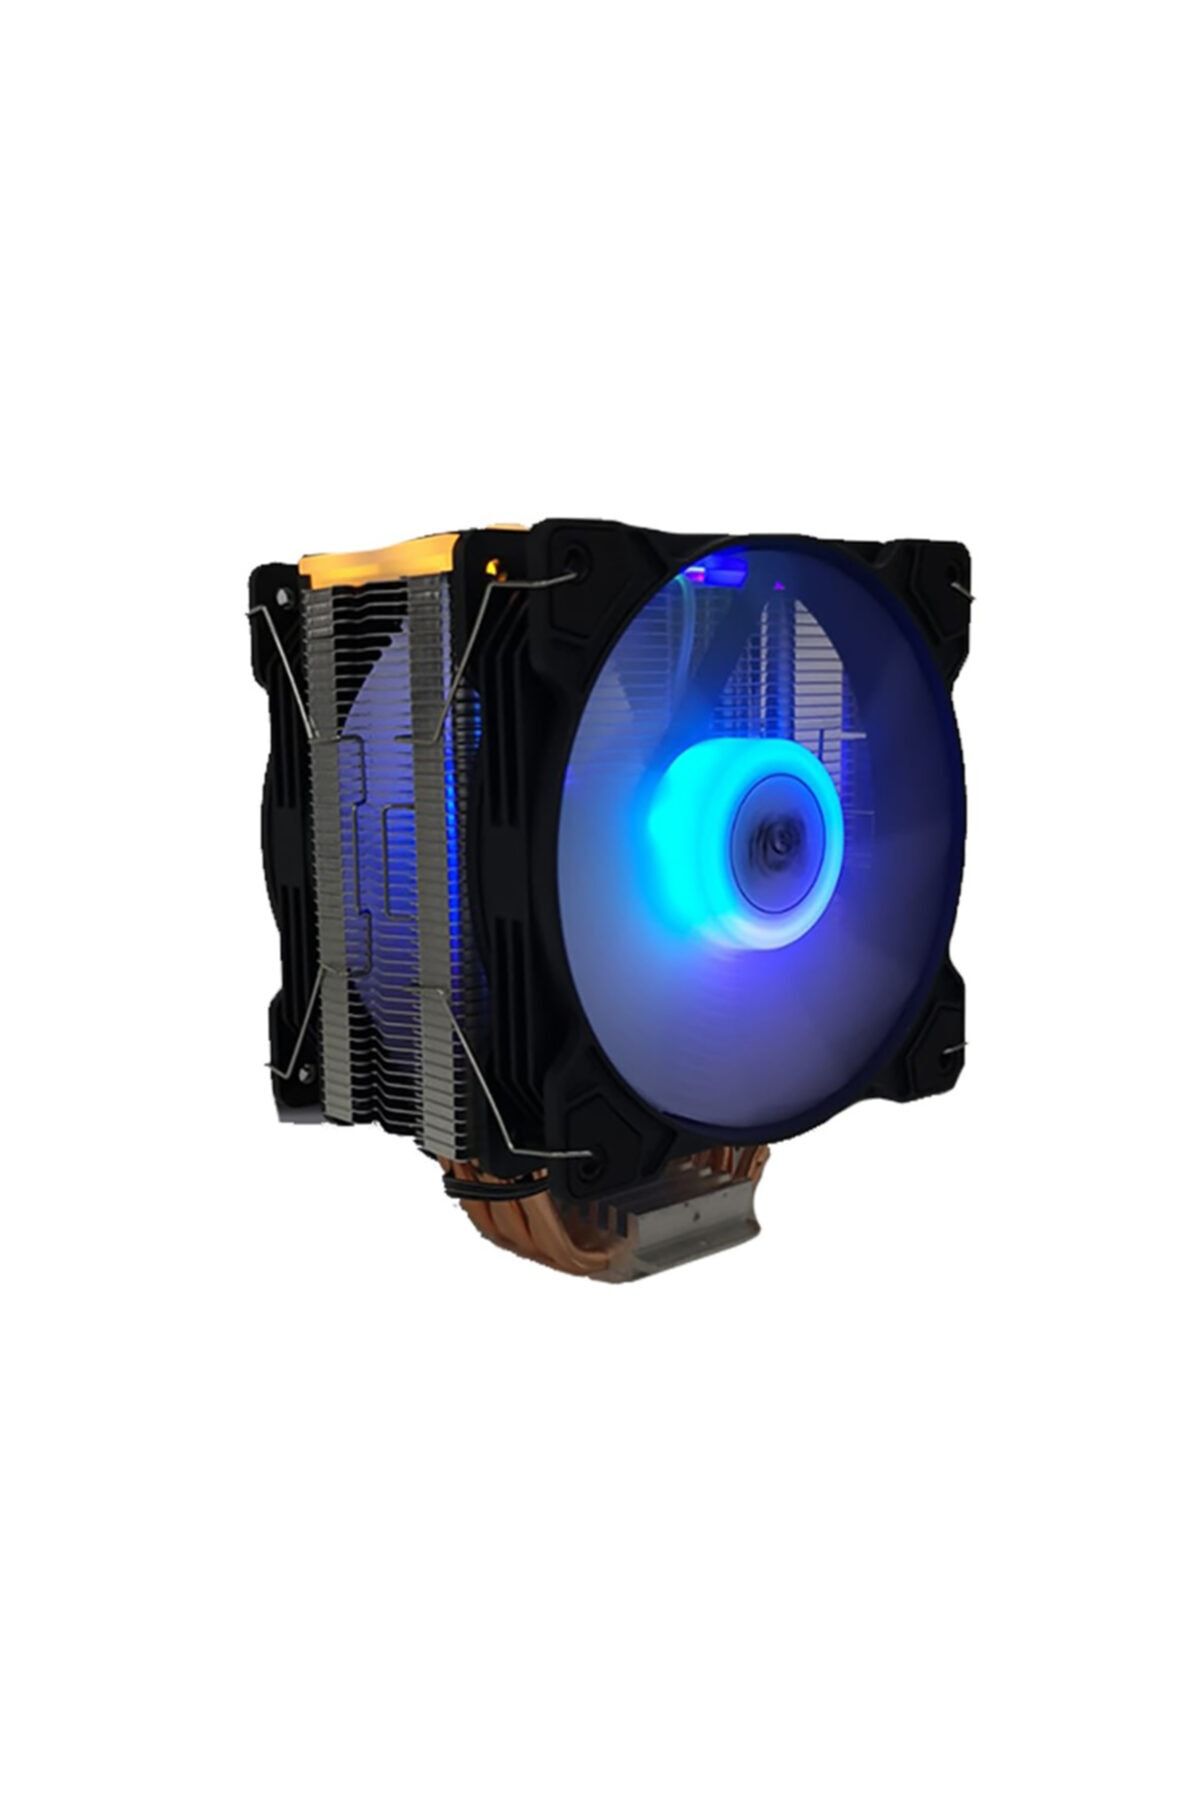 Snowman İntel Uyumlu T5 CPU Soğutucu Fan RGB Light Board Çift Fan